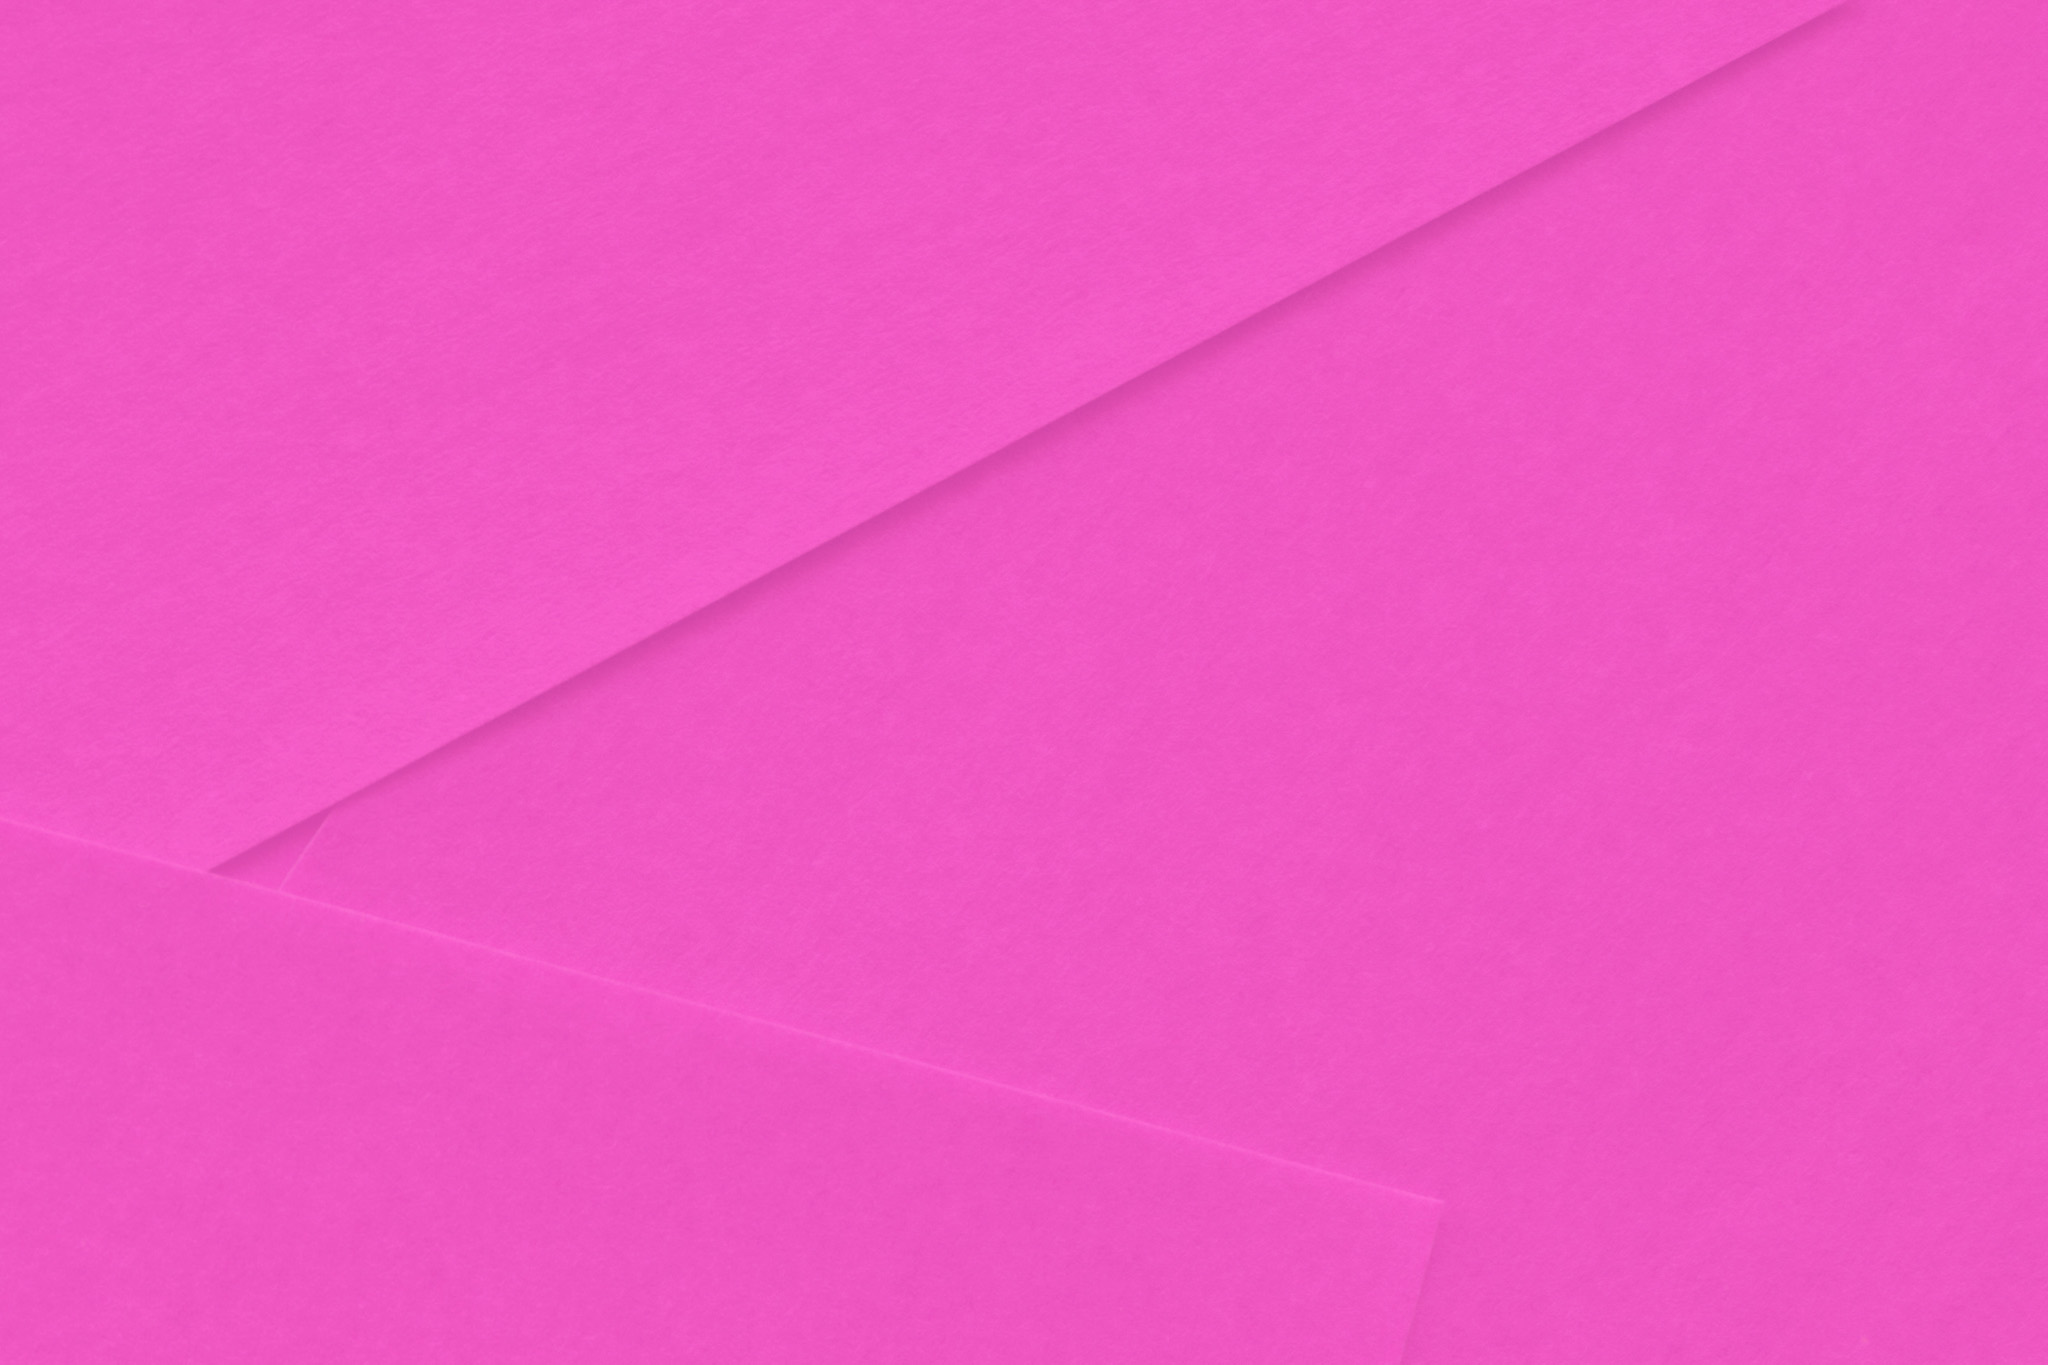 無地ピンク色のシンプルな背景 の画像素材を無料ダウンロード 1 フリー素材 Beiz Images